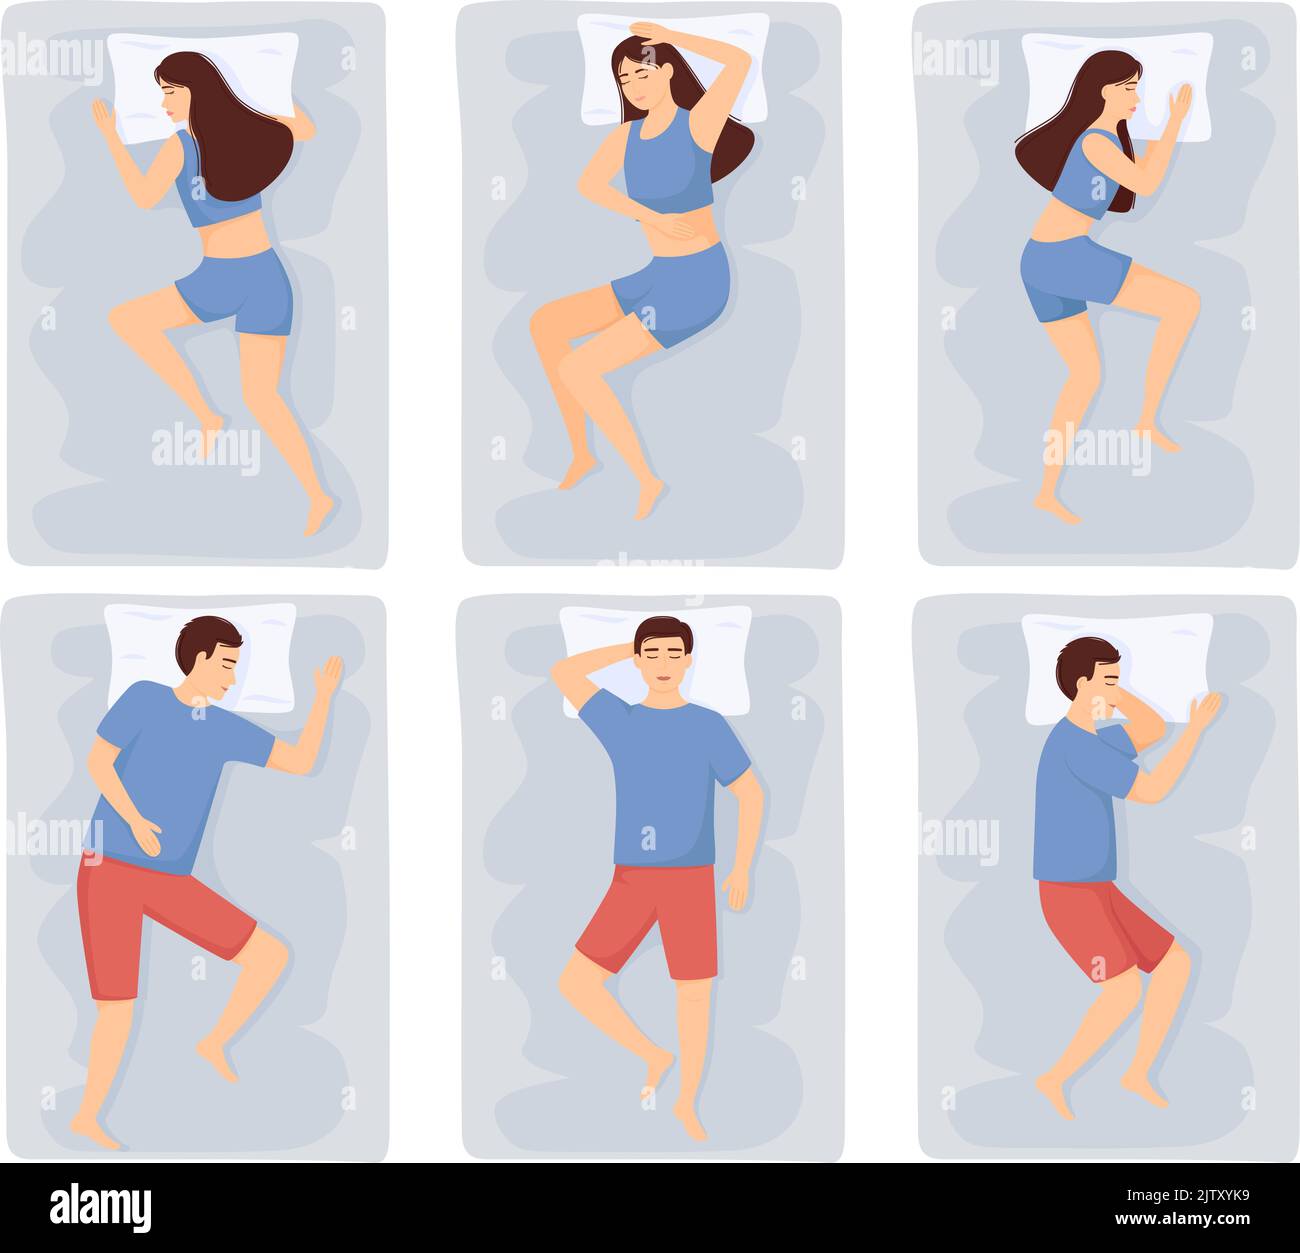 Álbumes 91+ Foto fotos de posiciones sexuale en la cama hombre y mujer Actualizar